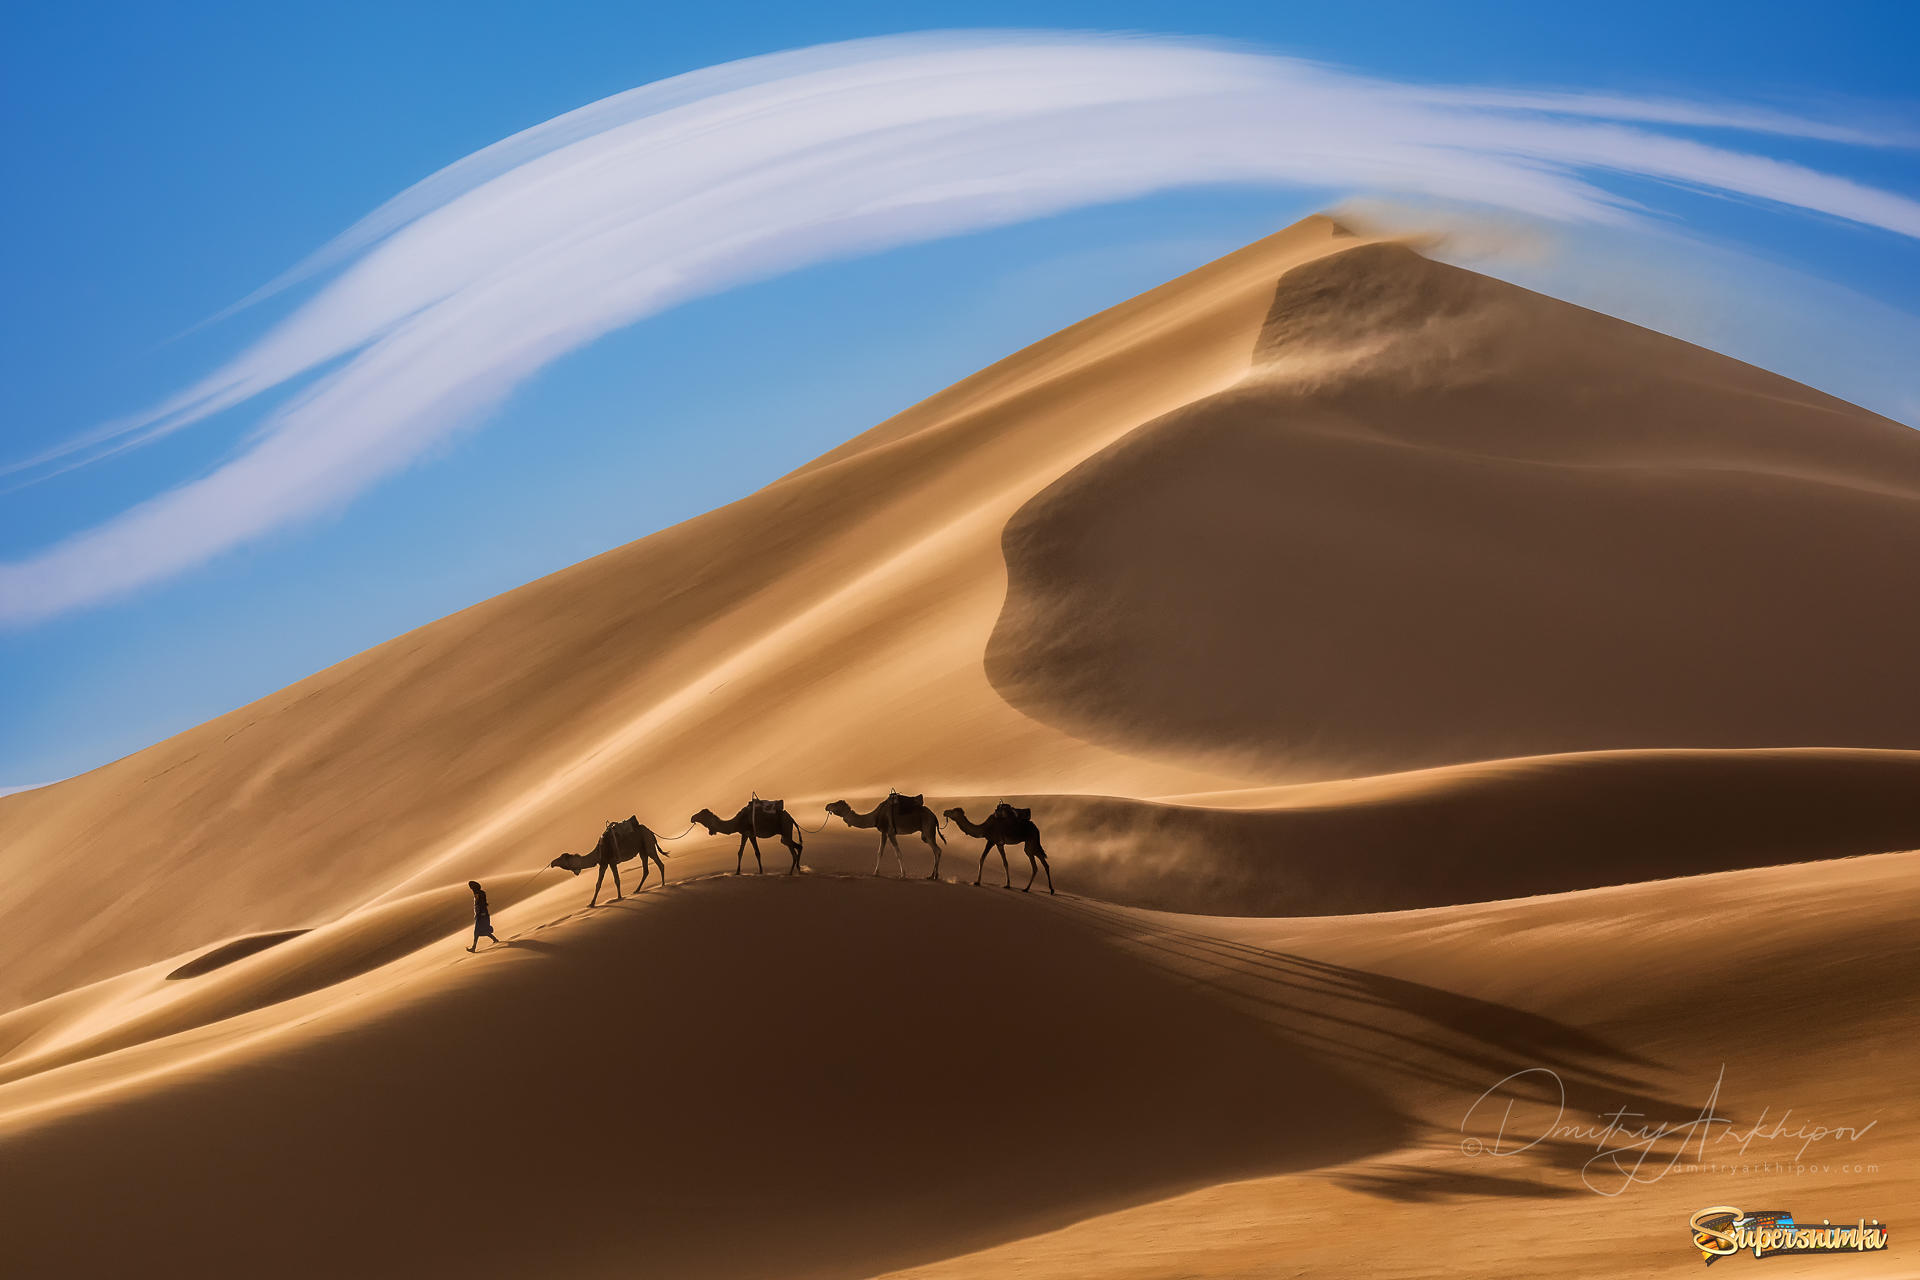 100 караван. Фототур в Марокко. Пейзаж пустыни Кызылкум. Верблюд в пустыне.